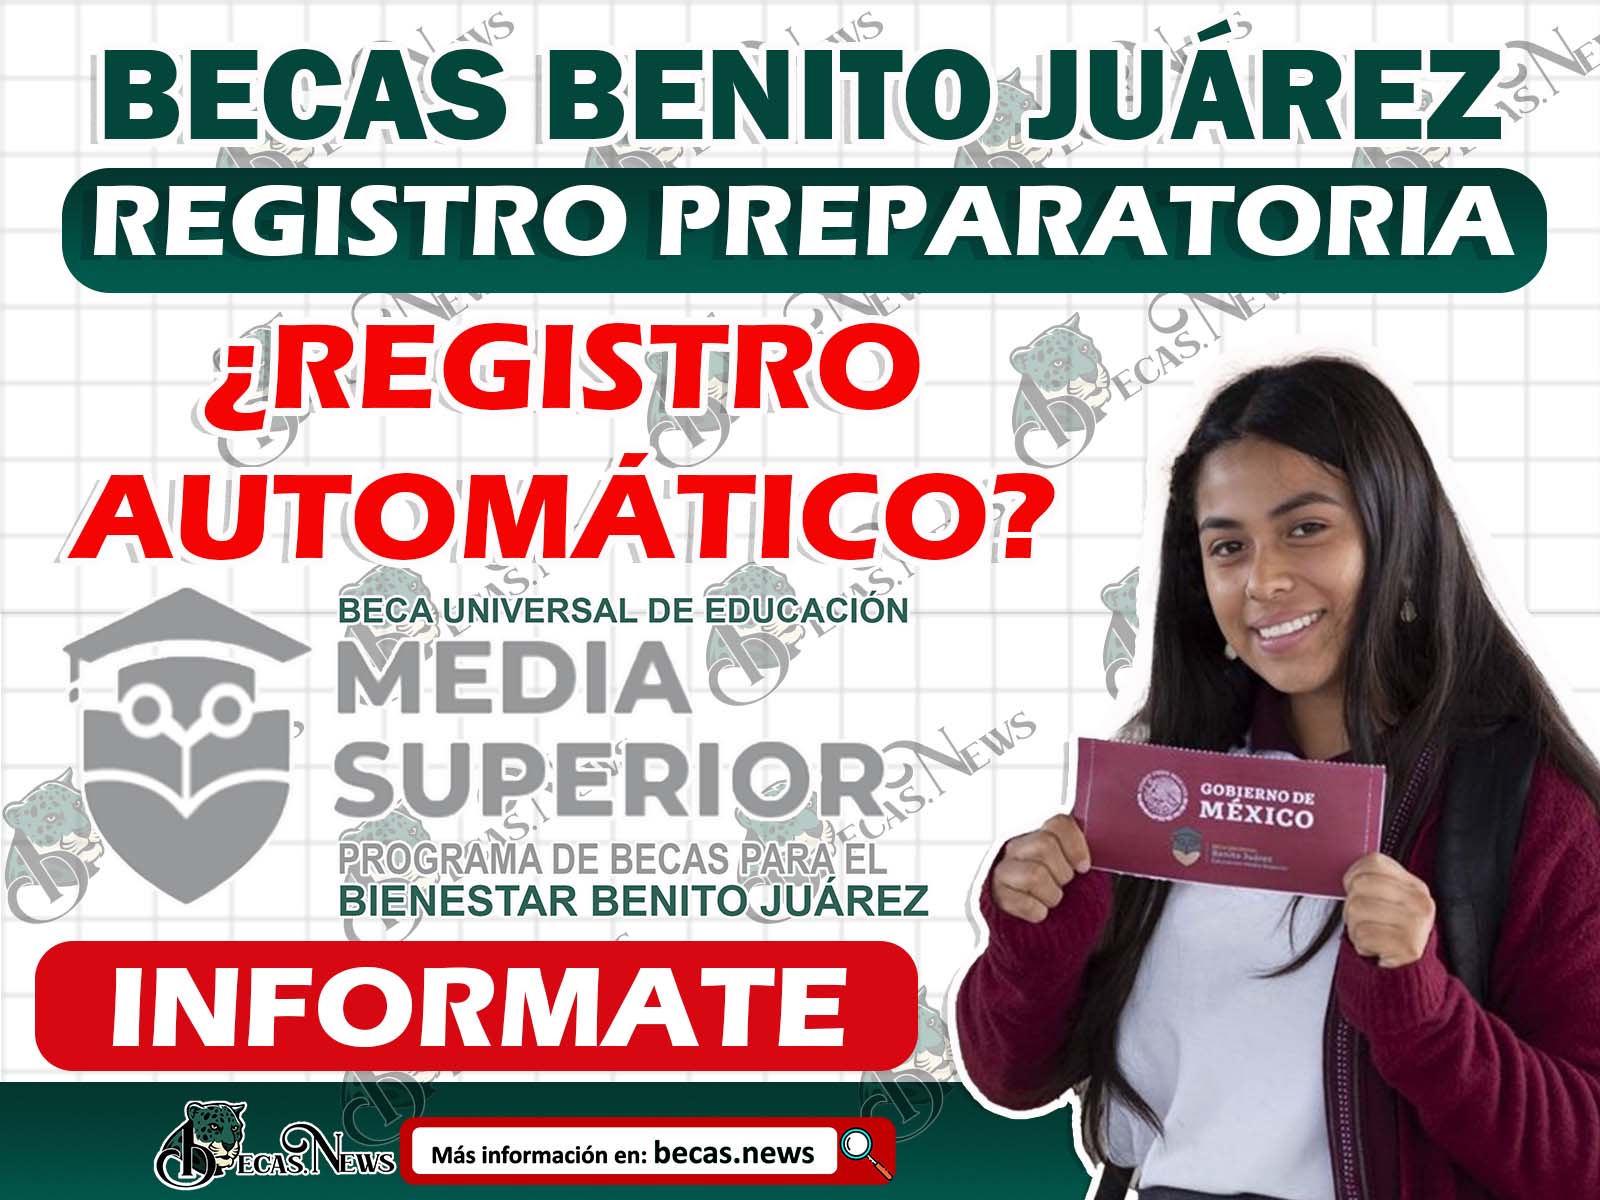 Así se realiza el Registro para las Becas Benito Juárez Nivel Media Superior ¡Preparatoria!